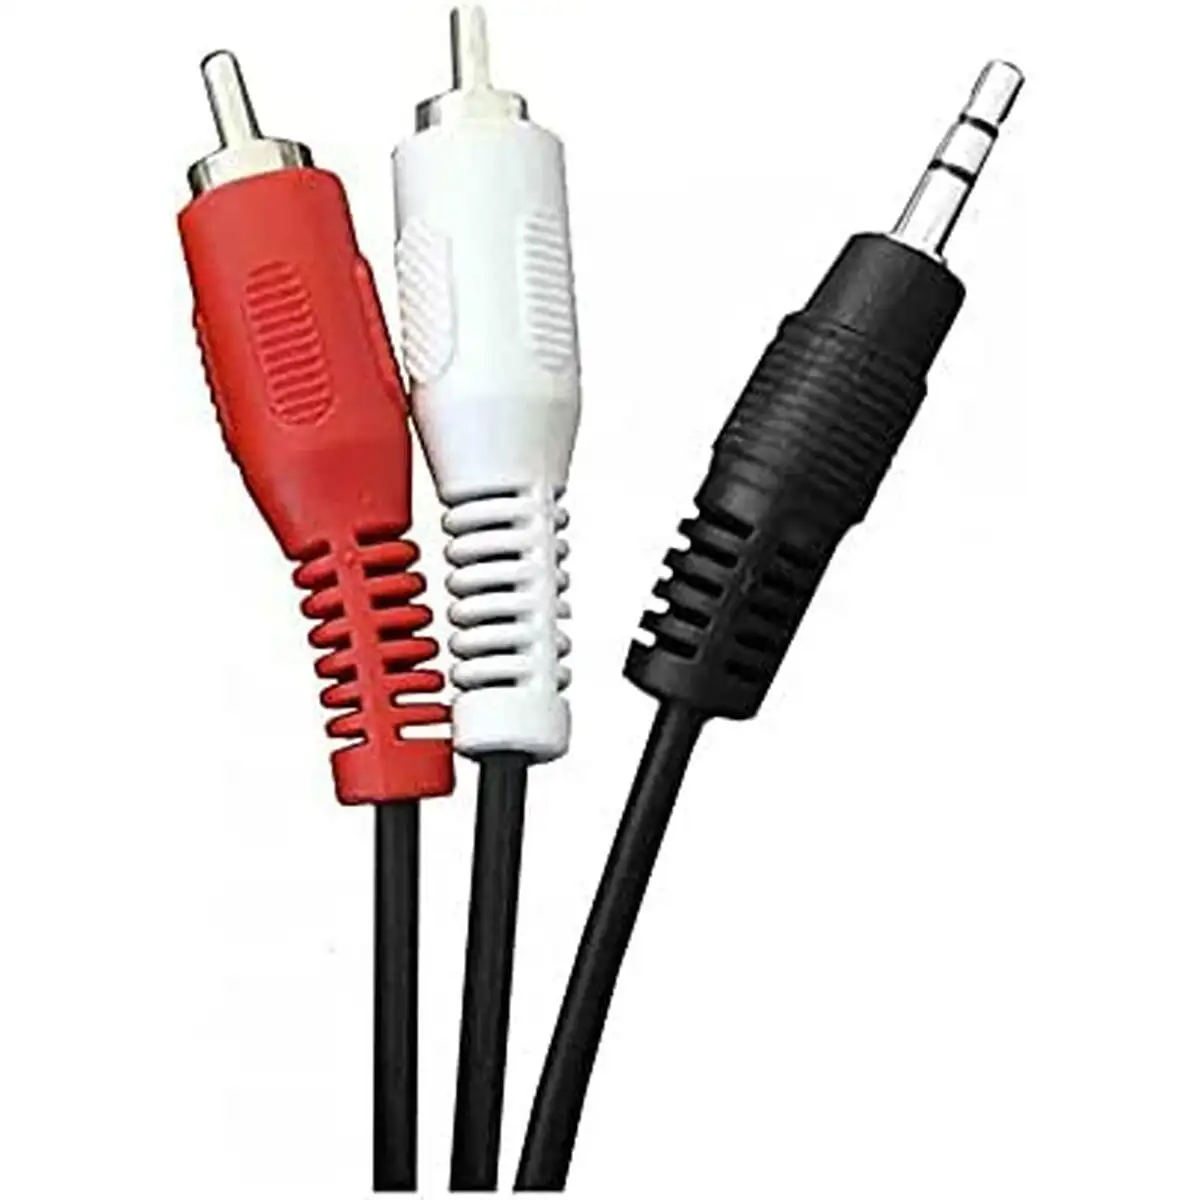 Cable audio jack 3 5 mm vers 2 rca edm 1 5 m_1475. DIAYTAR SENEGAL - Votre Portail Vers l'Exclusivité. Explorez notre boutique en ligne pour découvrir des produits uniques et raffinés, conçus pour ceux qui recherchent l'excellence.